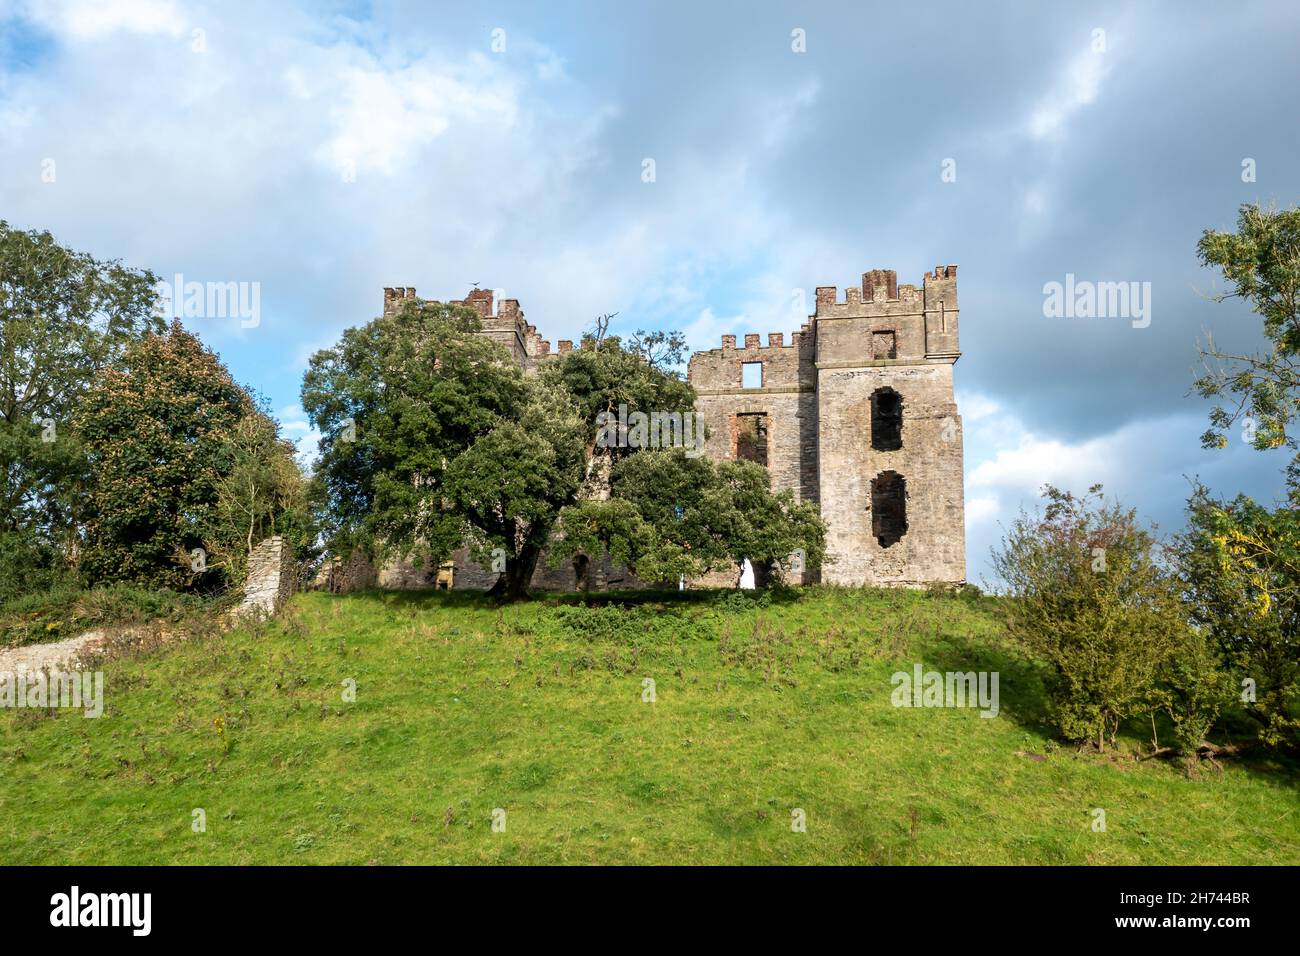 Les vestiges du château de Raphoe dans le comté de Donegal - Irlande. Banque D'Images